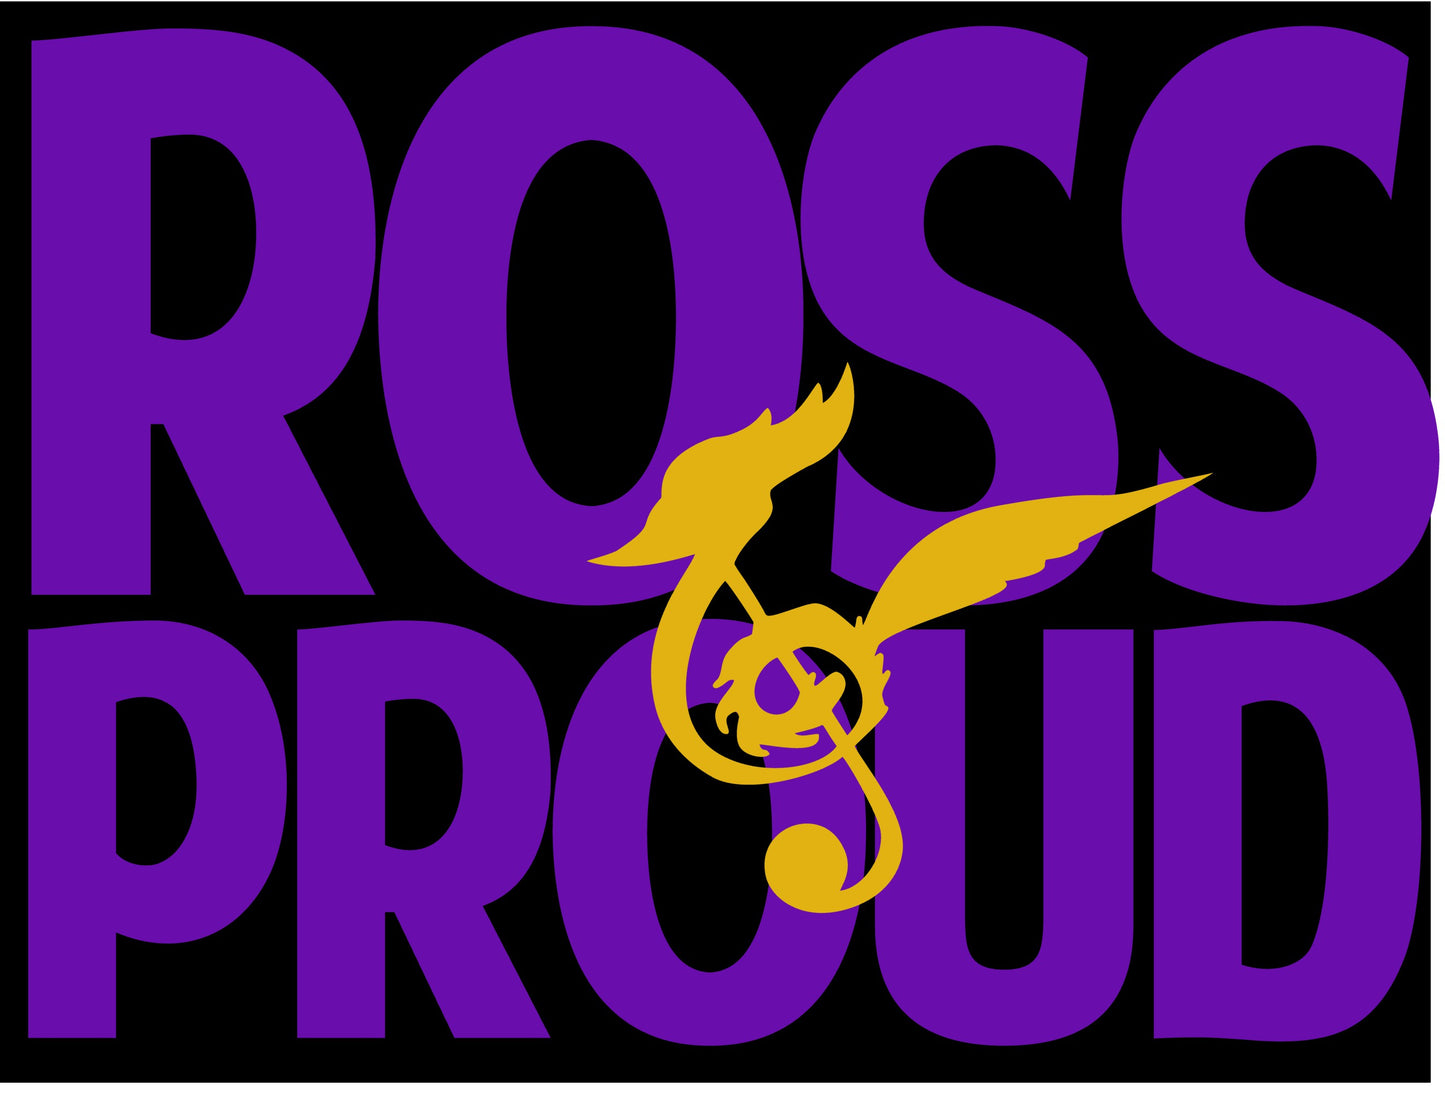 Ross Proud - Closes 1/22